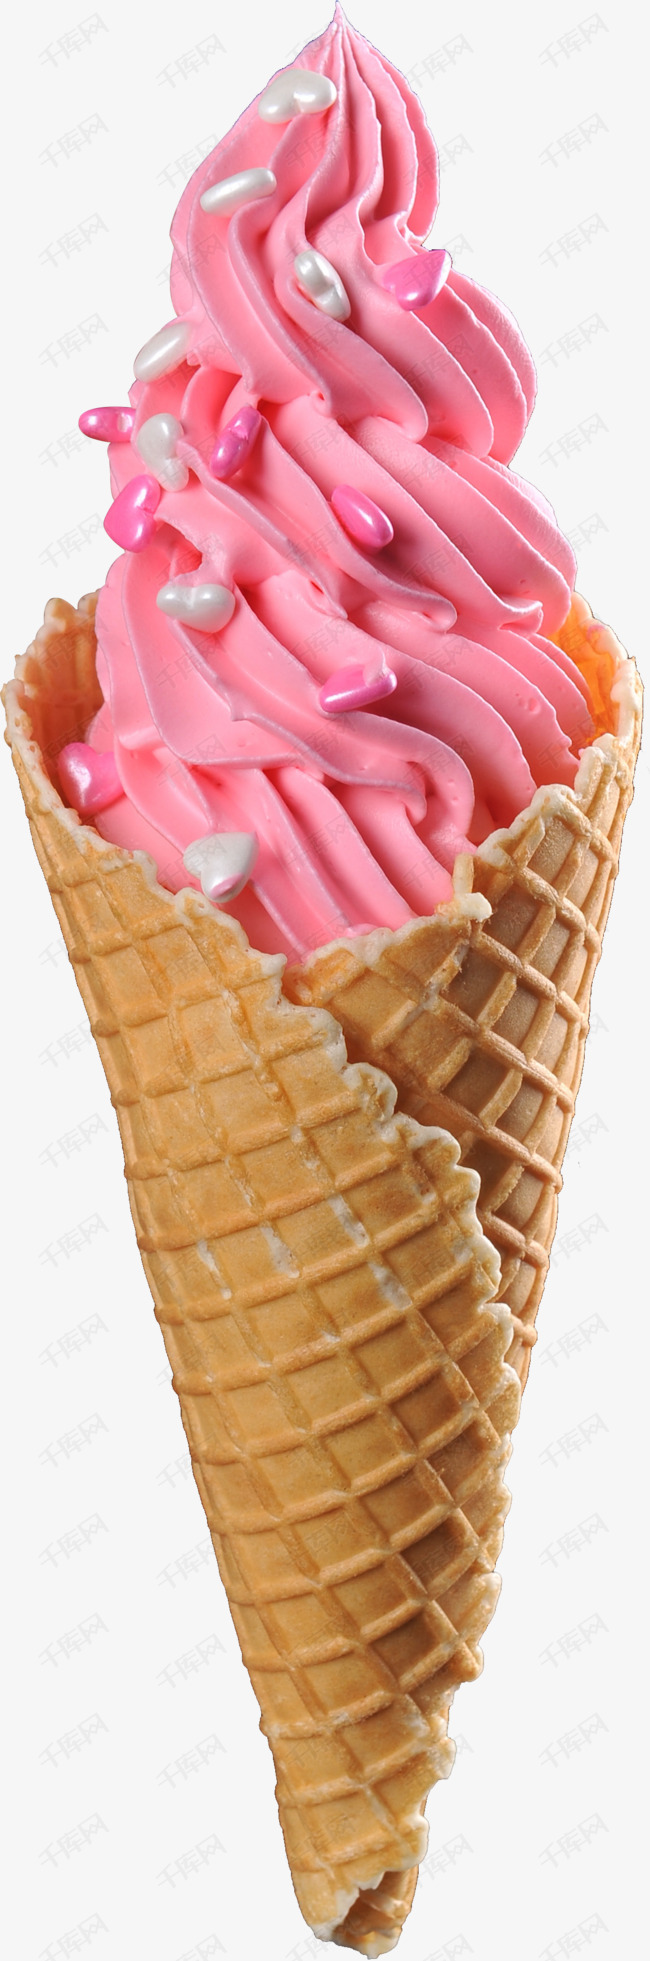 甜筒冰淇淋素材图片免费下载_高清卡通手绘png_千库网